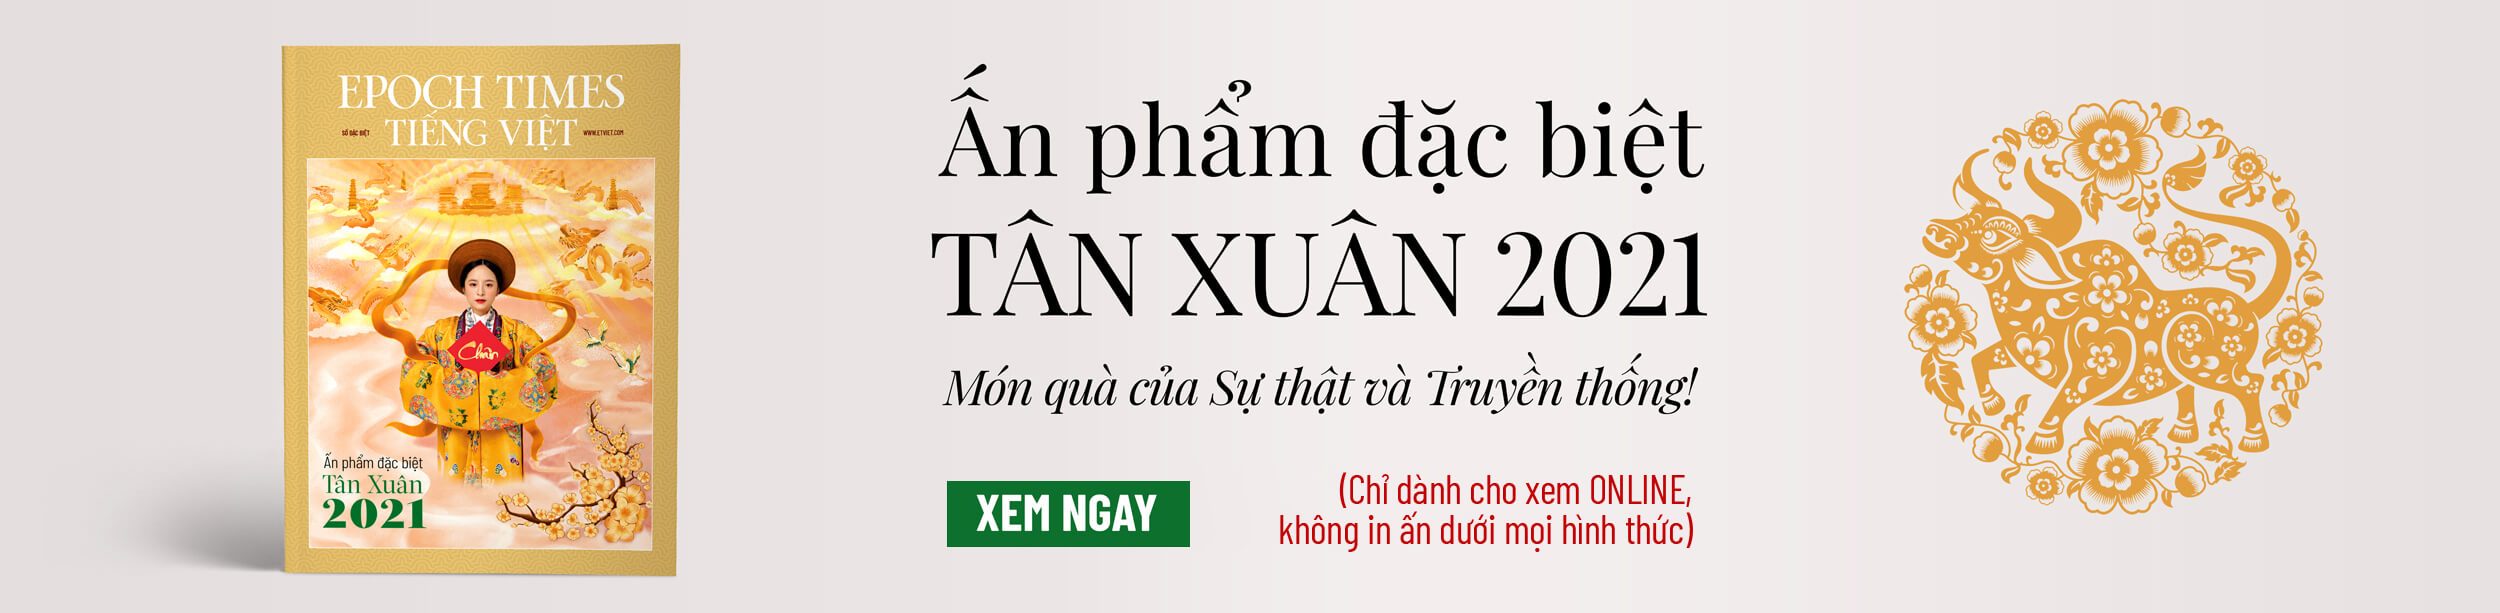 EMAGAZINE TÂN SỬU 2021 - Epoch Times Tiếng Việt